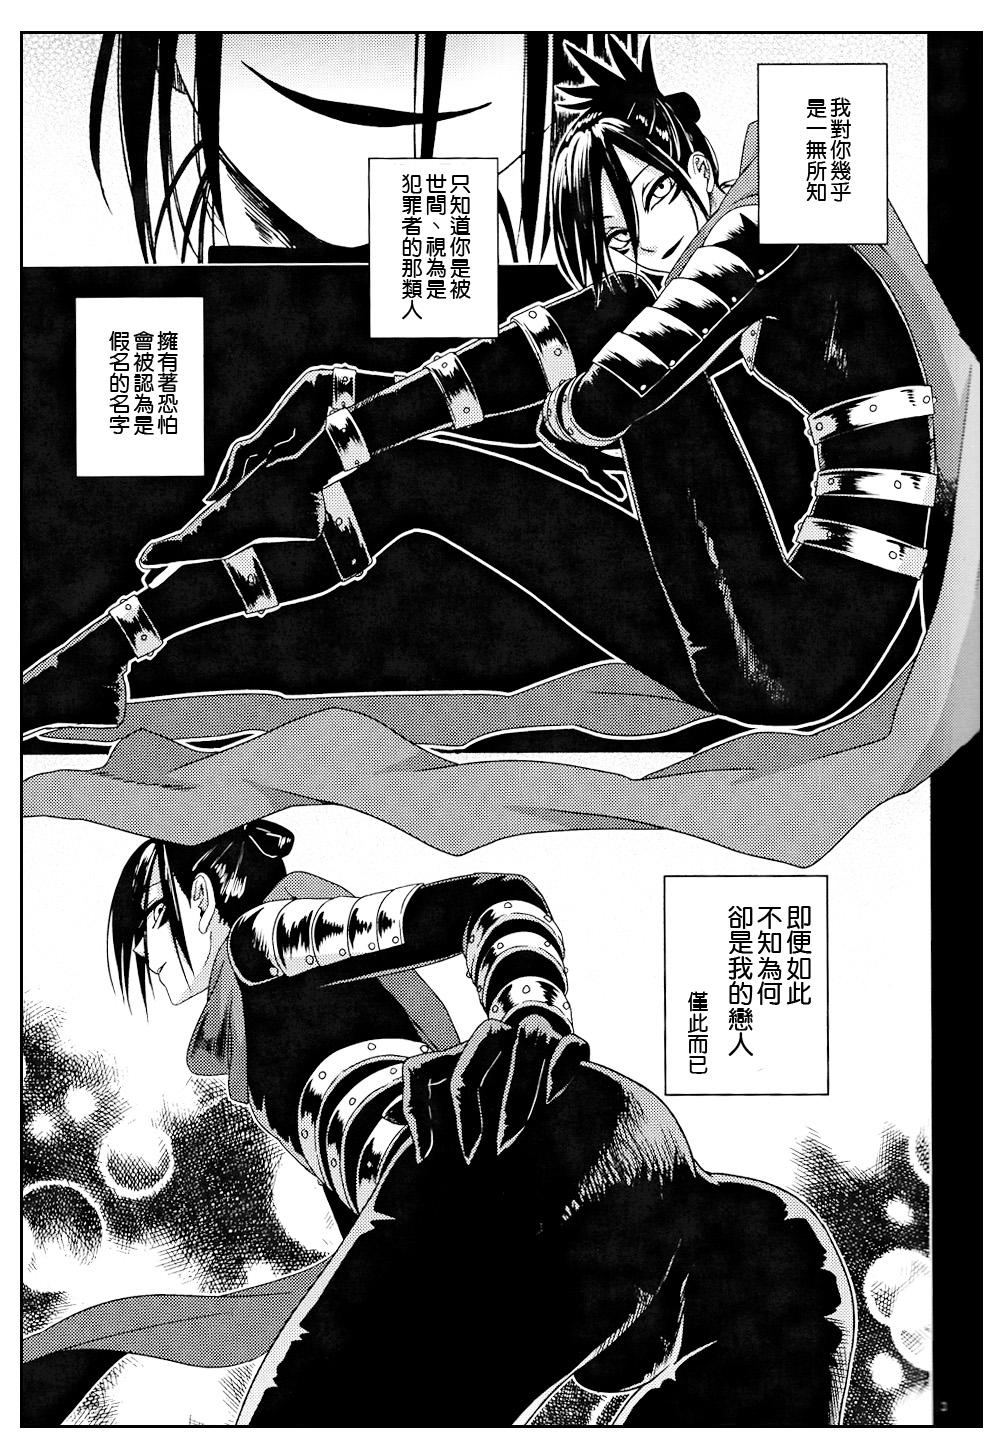 Horny Mobukare Honsoku - One punch man Rico - Page 2